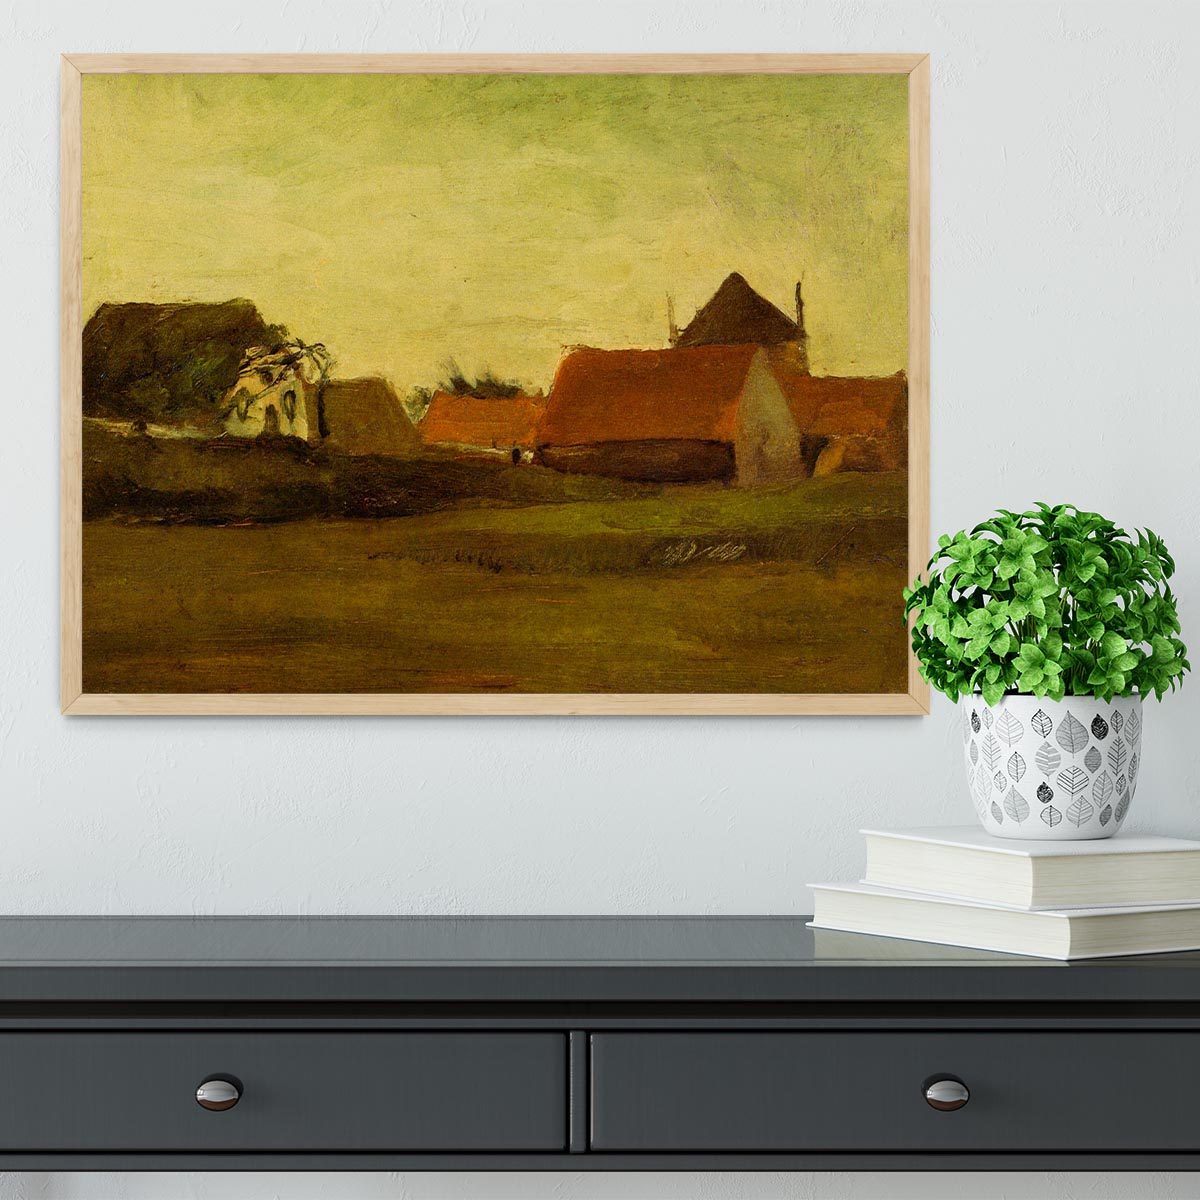 Farmhouses in Loosduinen near The Hague at Twilight by Van Gogh Framed Print - Canvas Art Rocks - 4